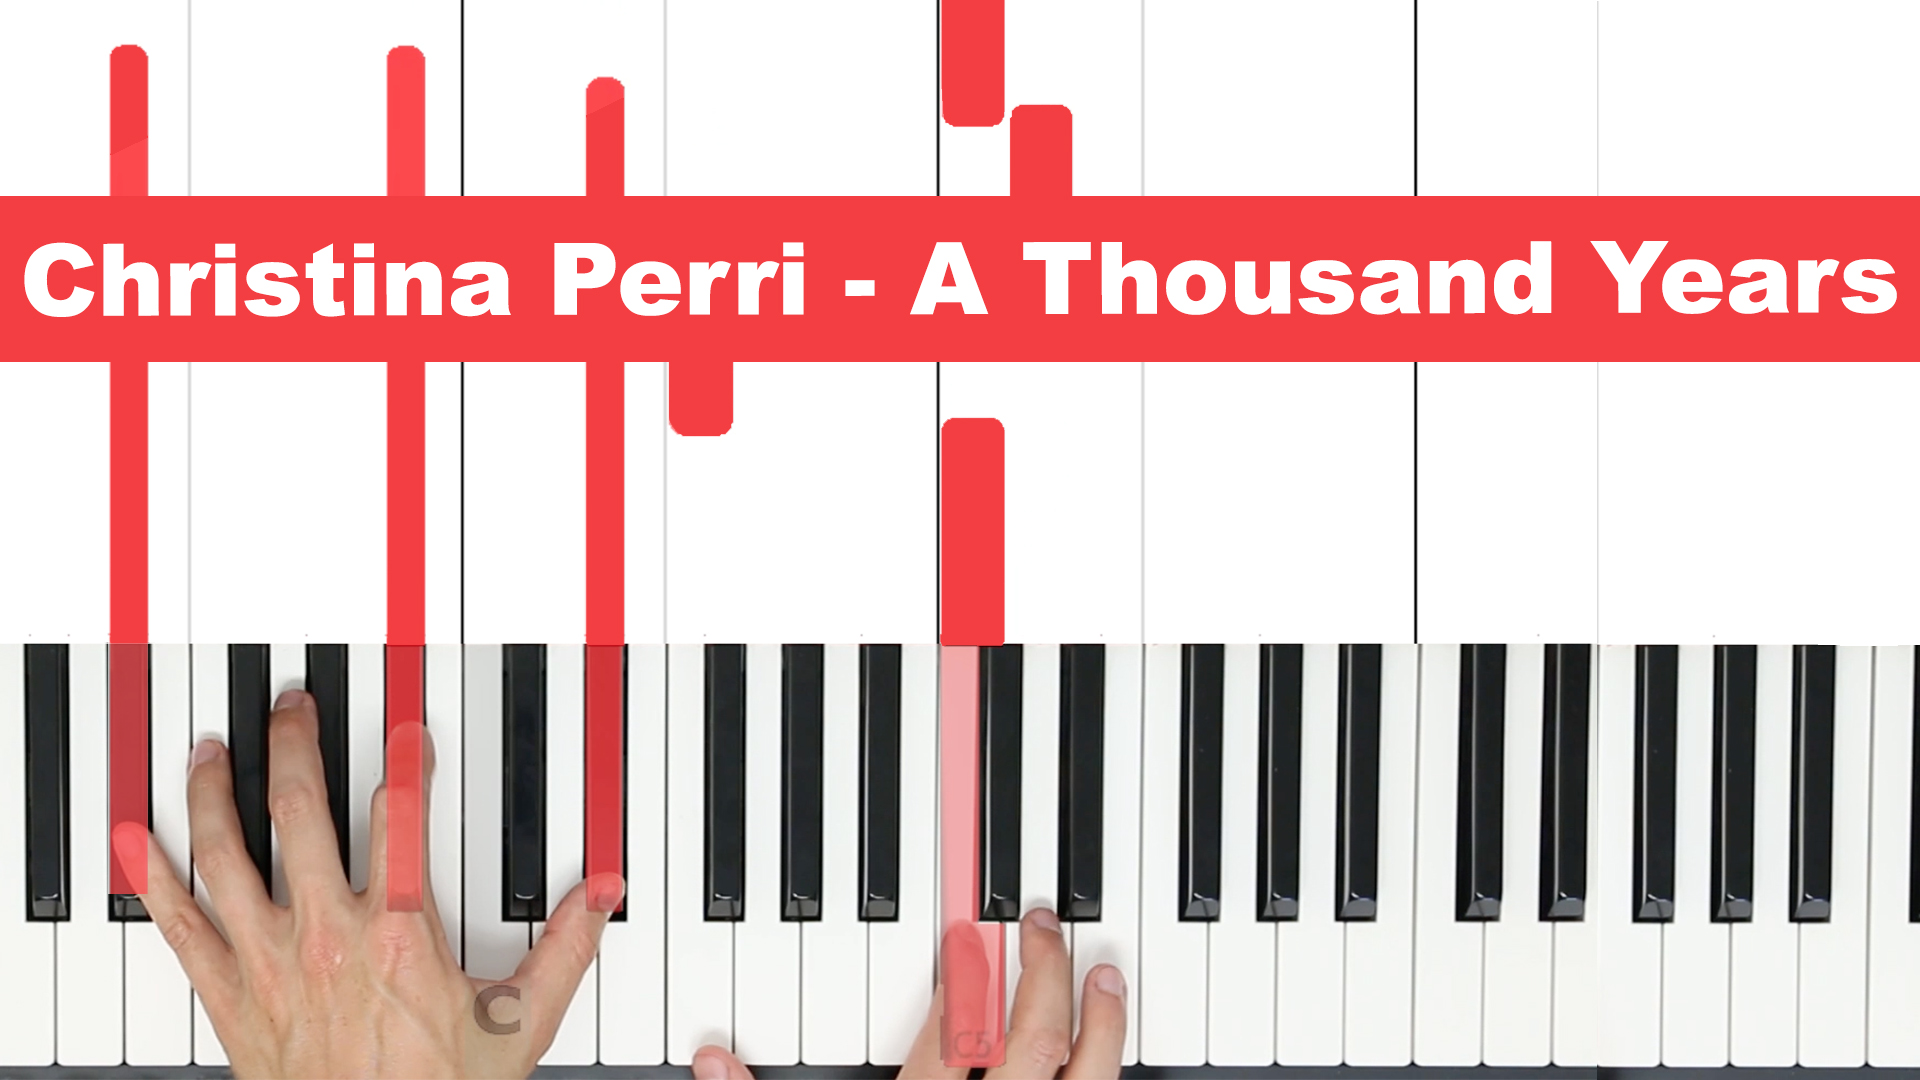 Christina Perri – A Thousand Years – Easy